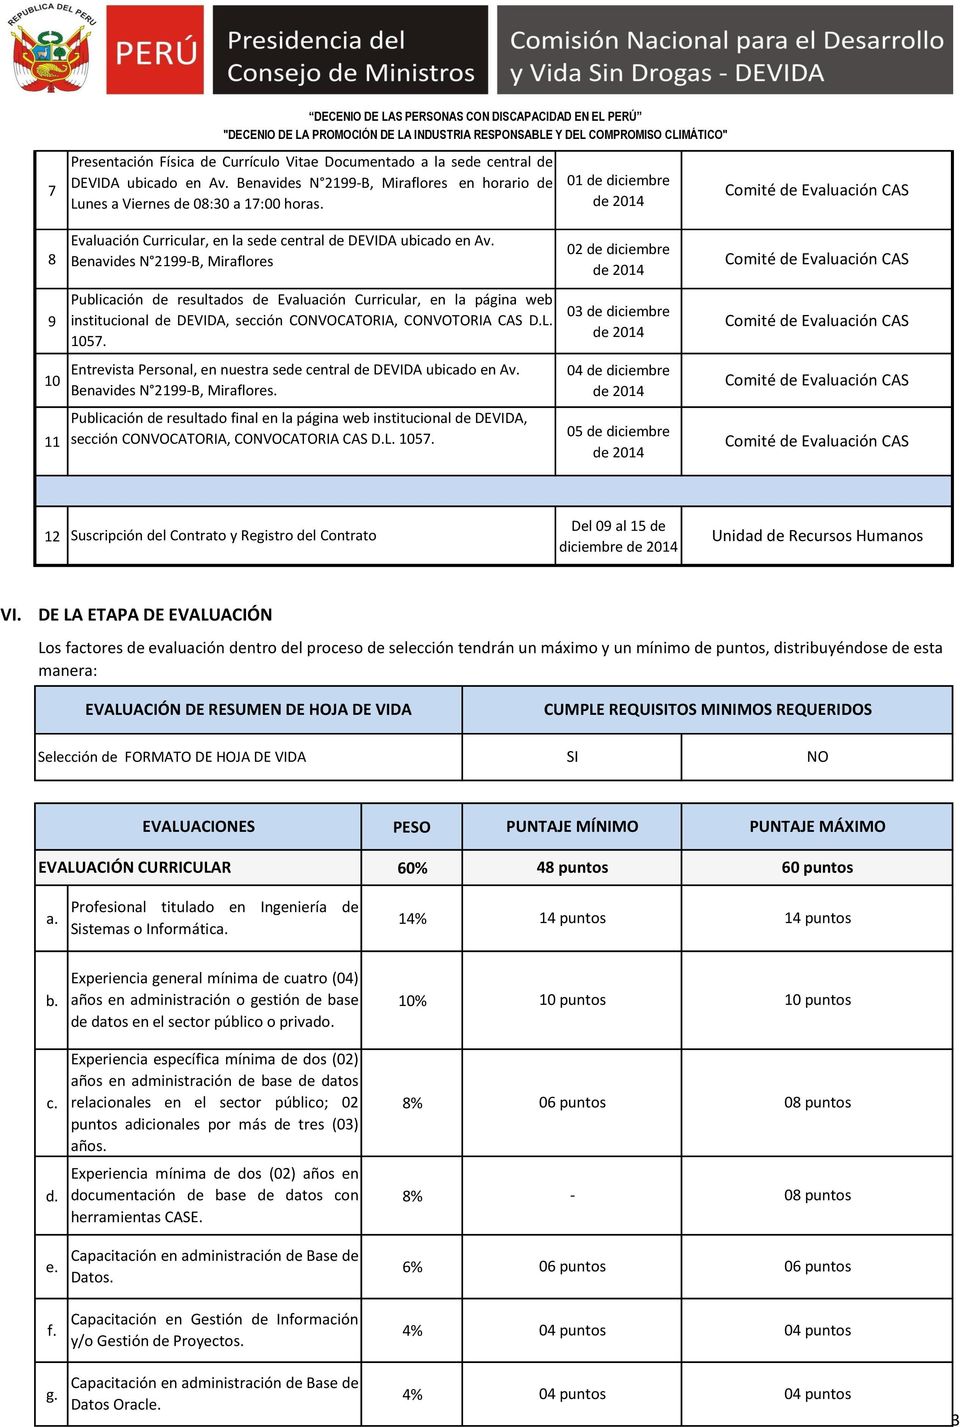 Benavides N 199-B, Miraflores 0 de diciembre 9 Publicación de resultados de Evaluación Curricular, en la página web institucional de DEVIDA, sección CONVOCATORIA, CONVOTORIA CAS D.L. 1057.